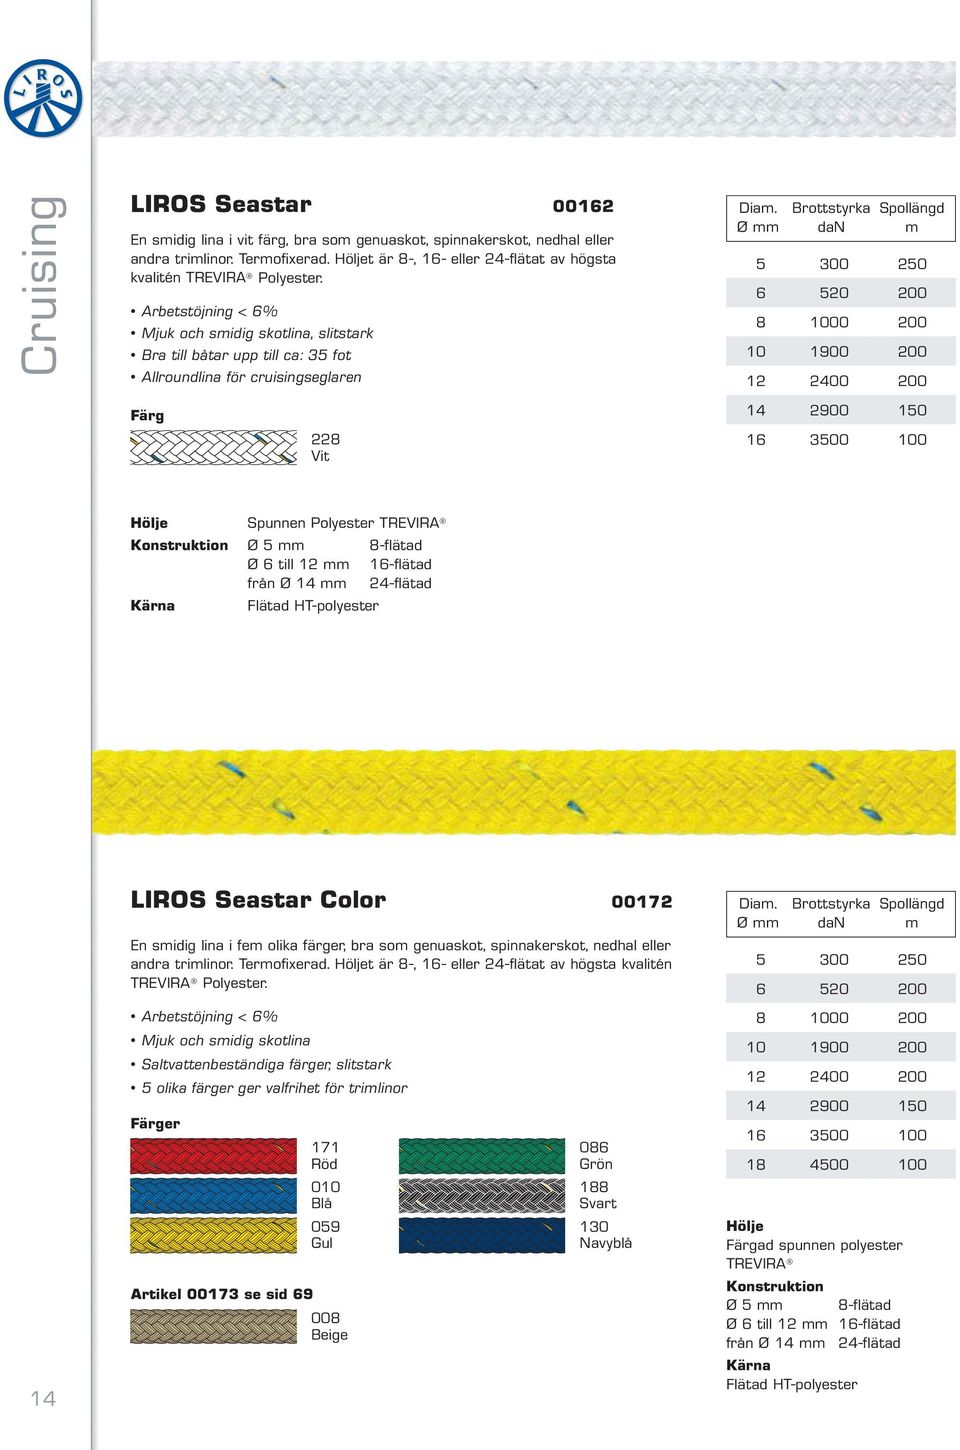 3500 100 Spunnen Polyester TREVIRA Ø 5 mm 8-flätad Ø 6 till 12 mm 16-flätad från Ø 14 mm 24-flätad Flätad HT-polyester 14 LIROS Seastar Color 00172 En smidig lina i fem olika färger, bra som